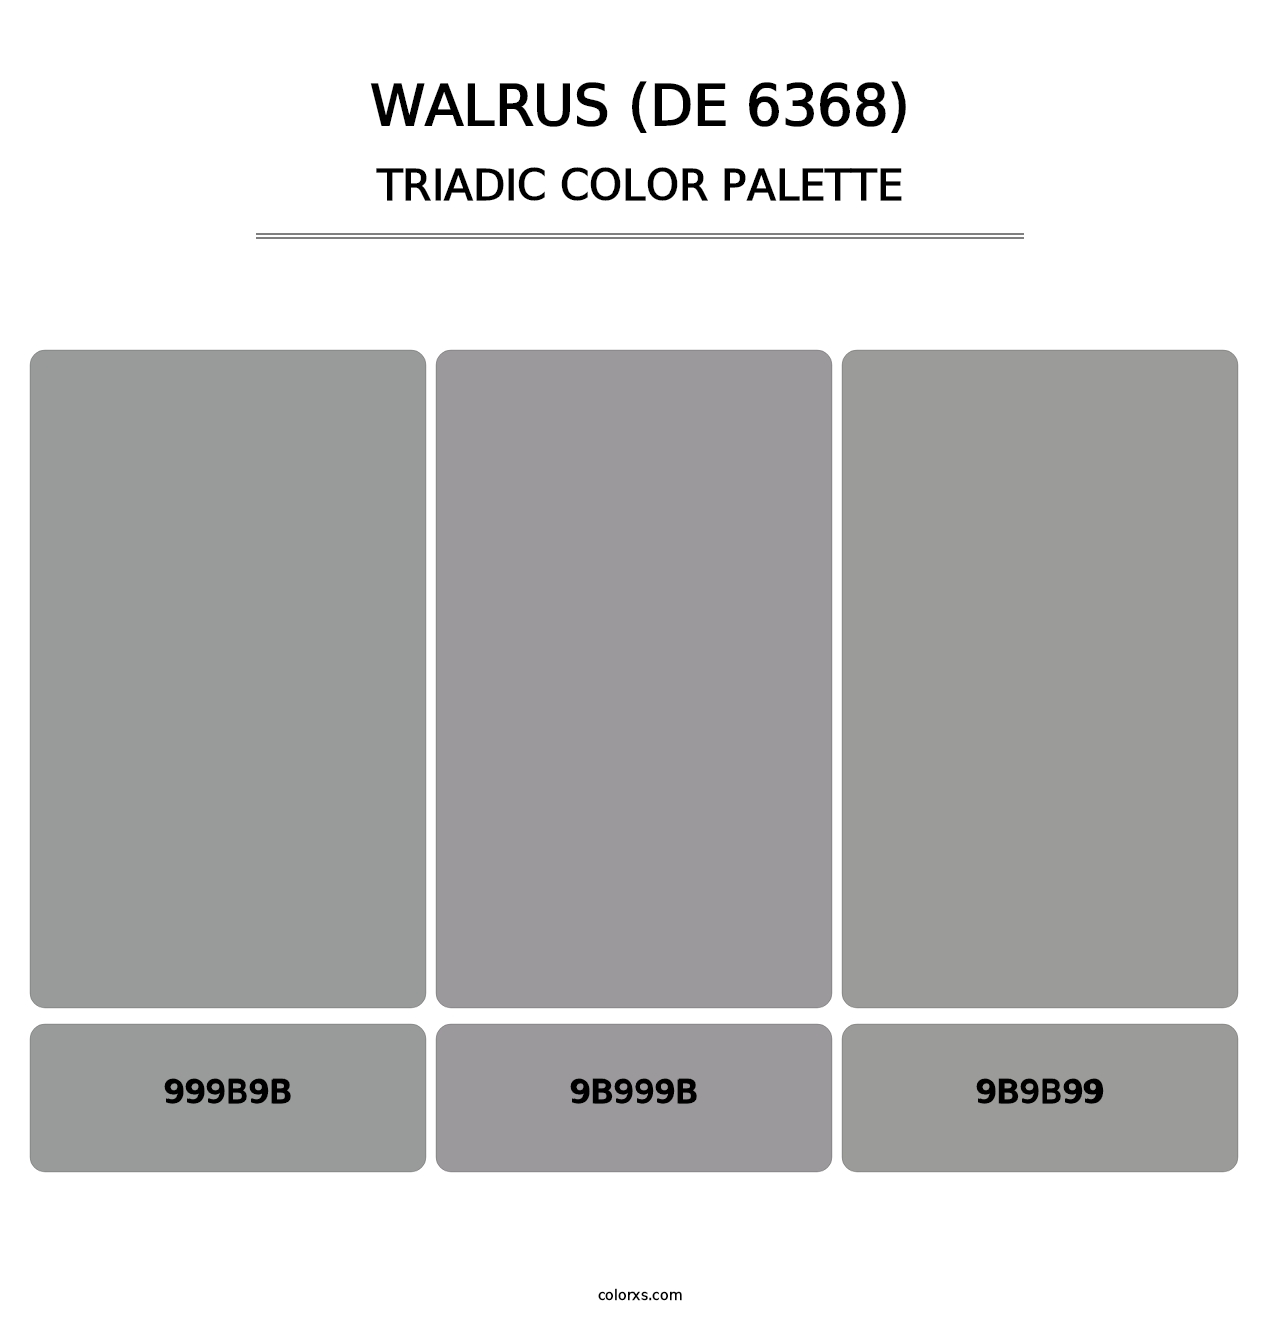 Walrus (DE 6368) - Triadic Color Palette